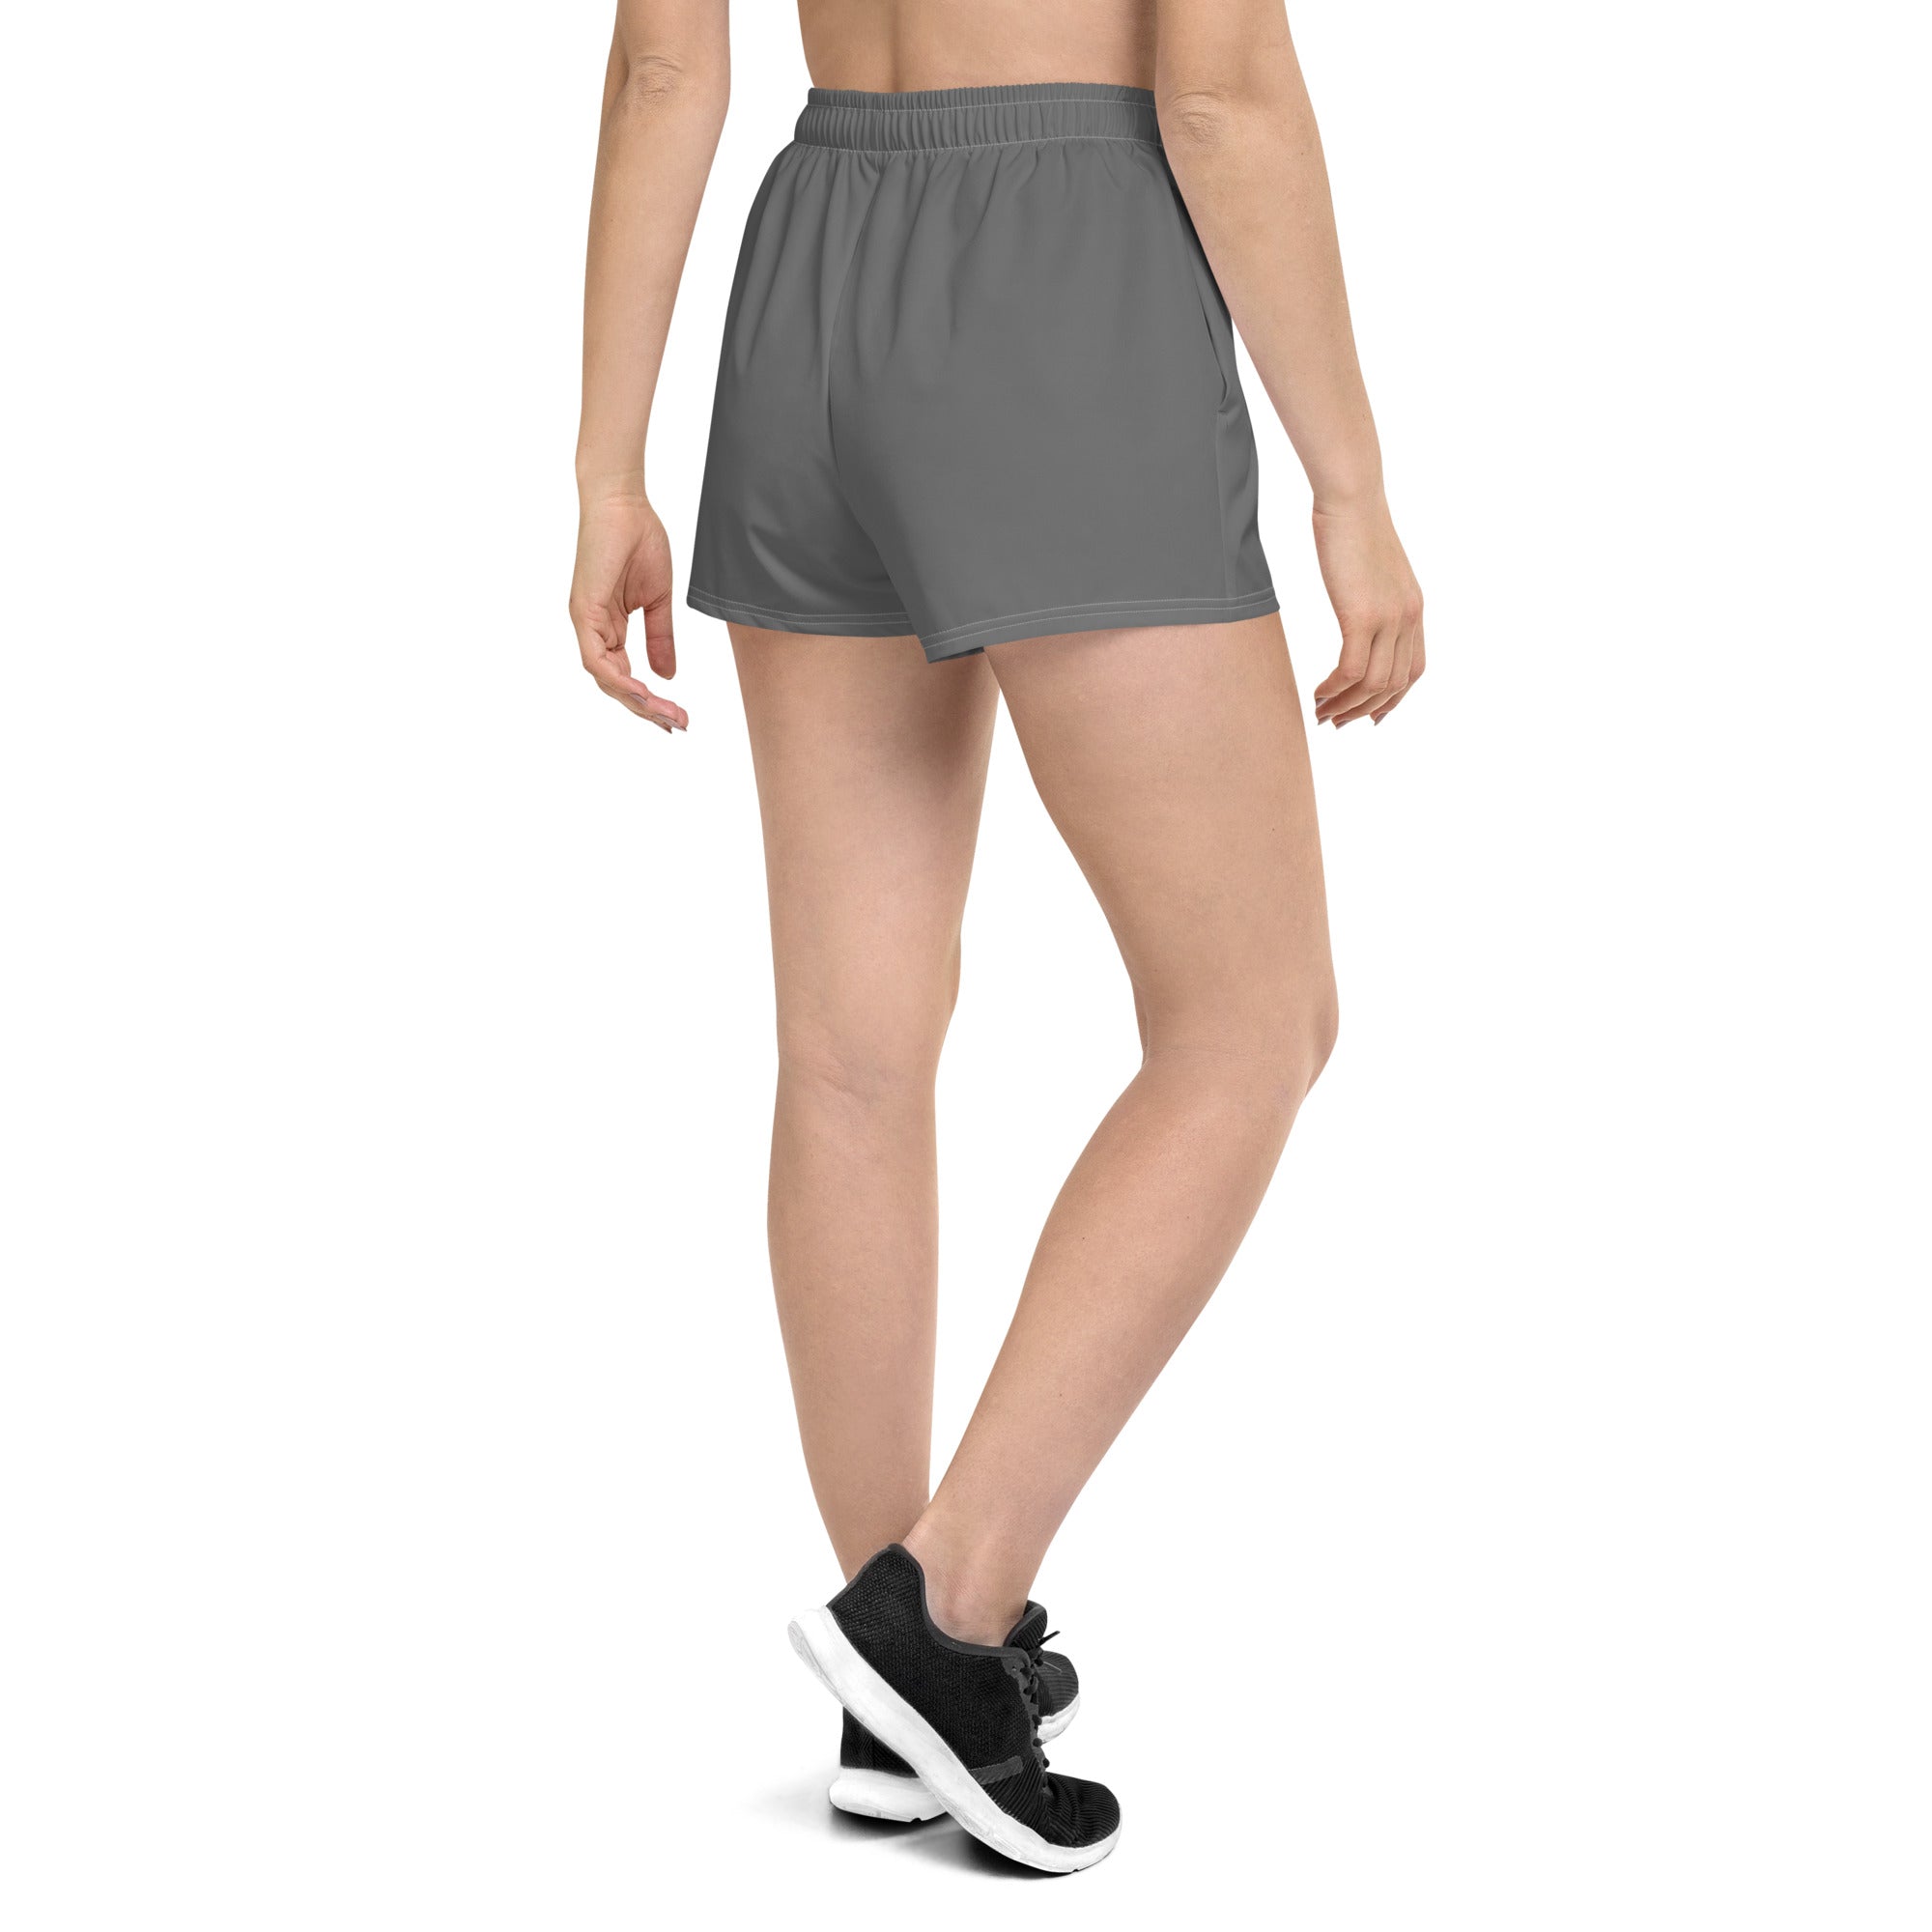 Gray / Black Athletic Shorts - FleekGoddess